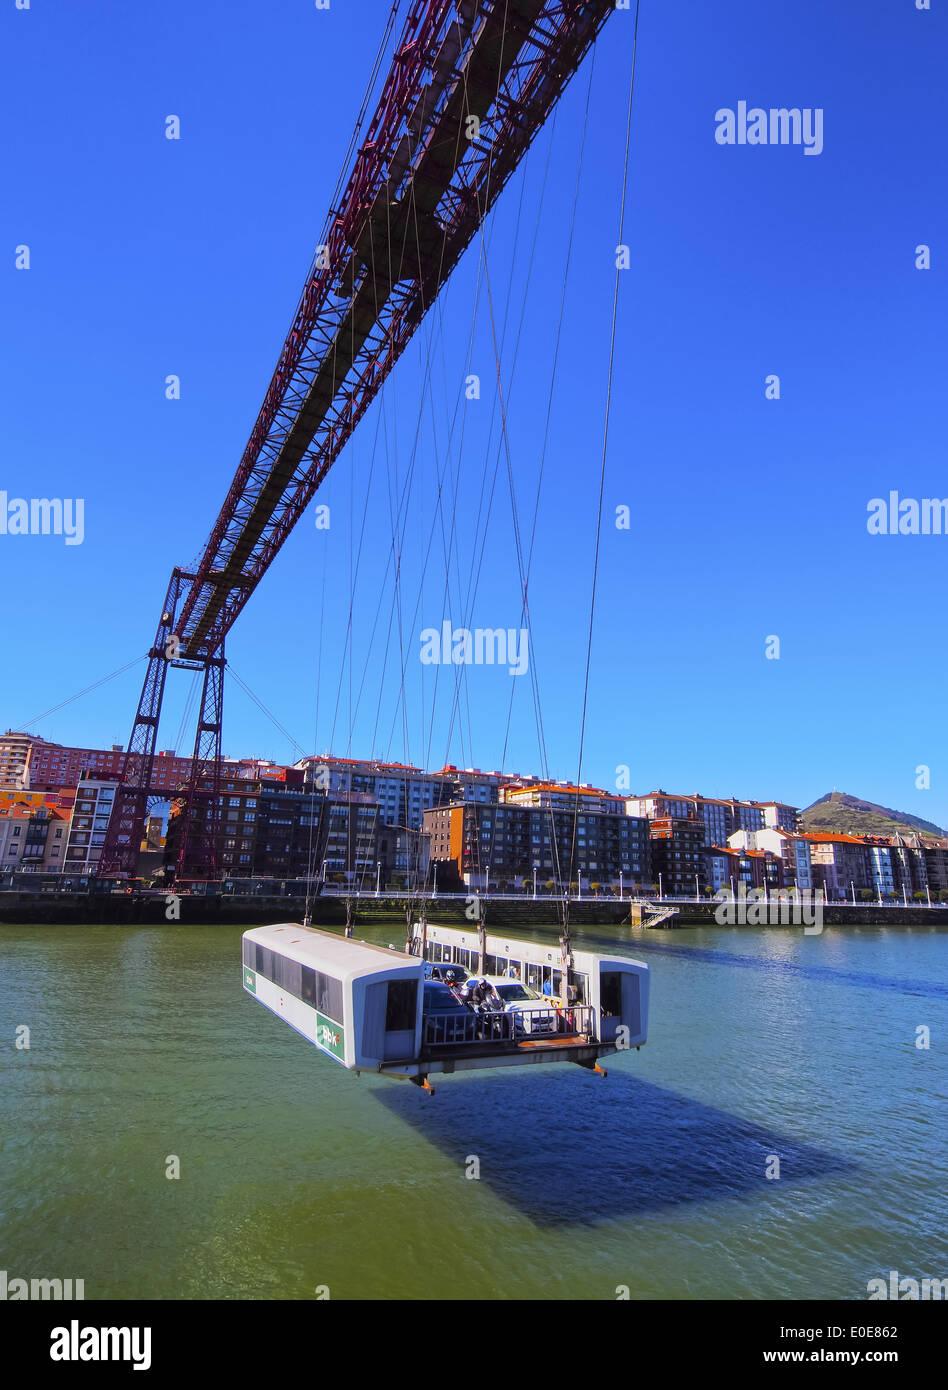 Puente Colgante ou Puente de Vizcaya - un pont suspendu batiments communicants Portugalete et Las Arenas, Gascogne, Pays Basque, Espagne Banque D'Images